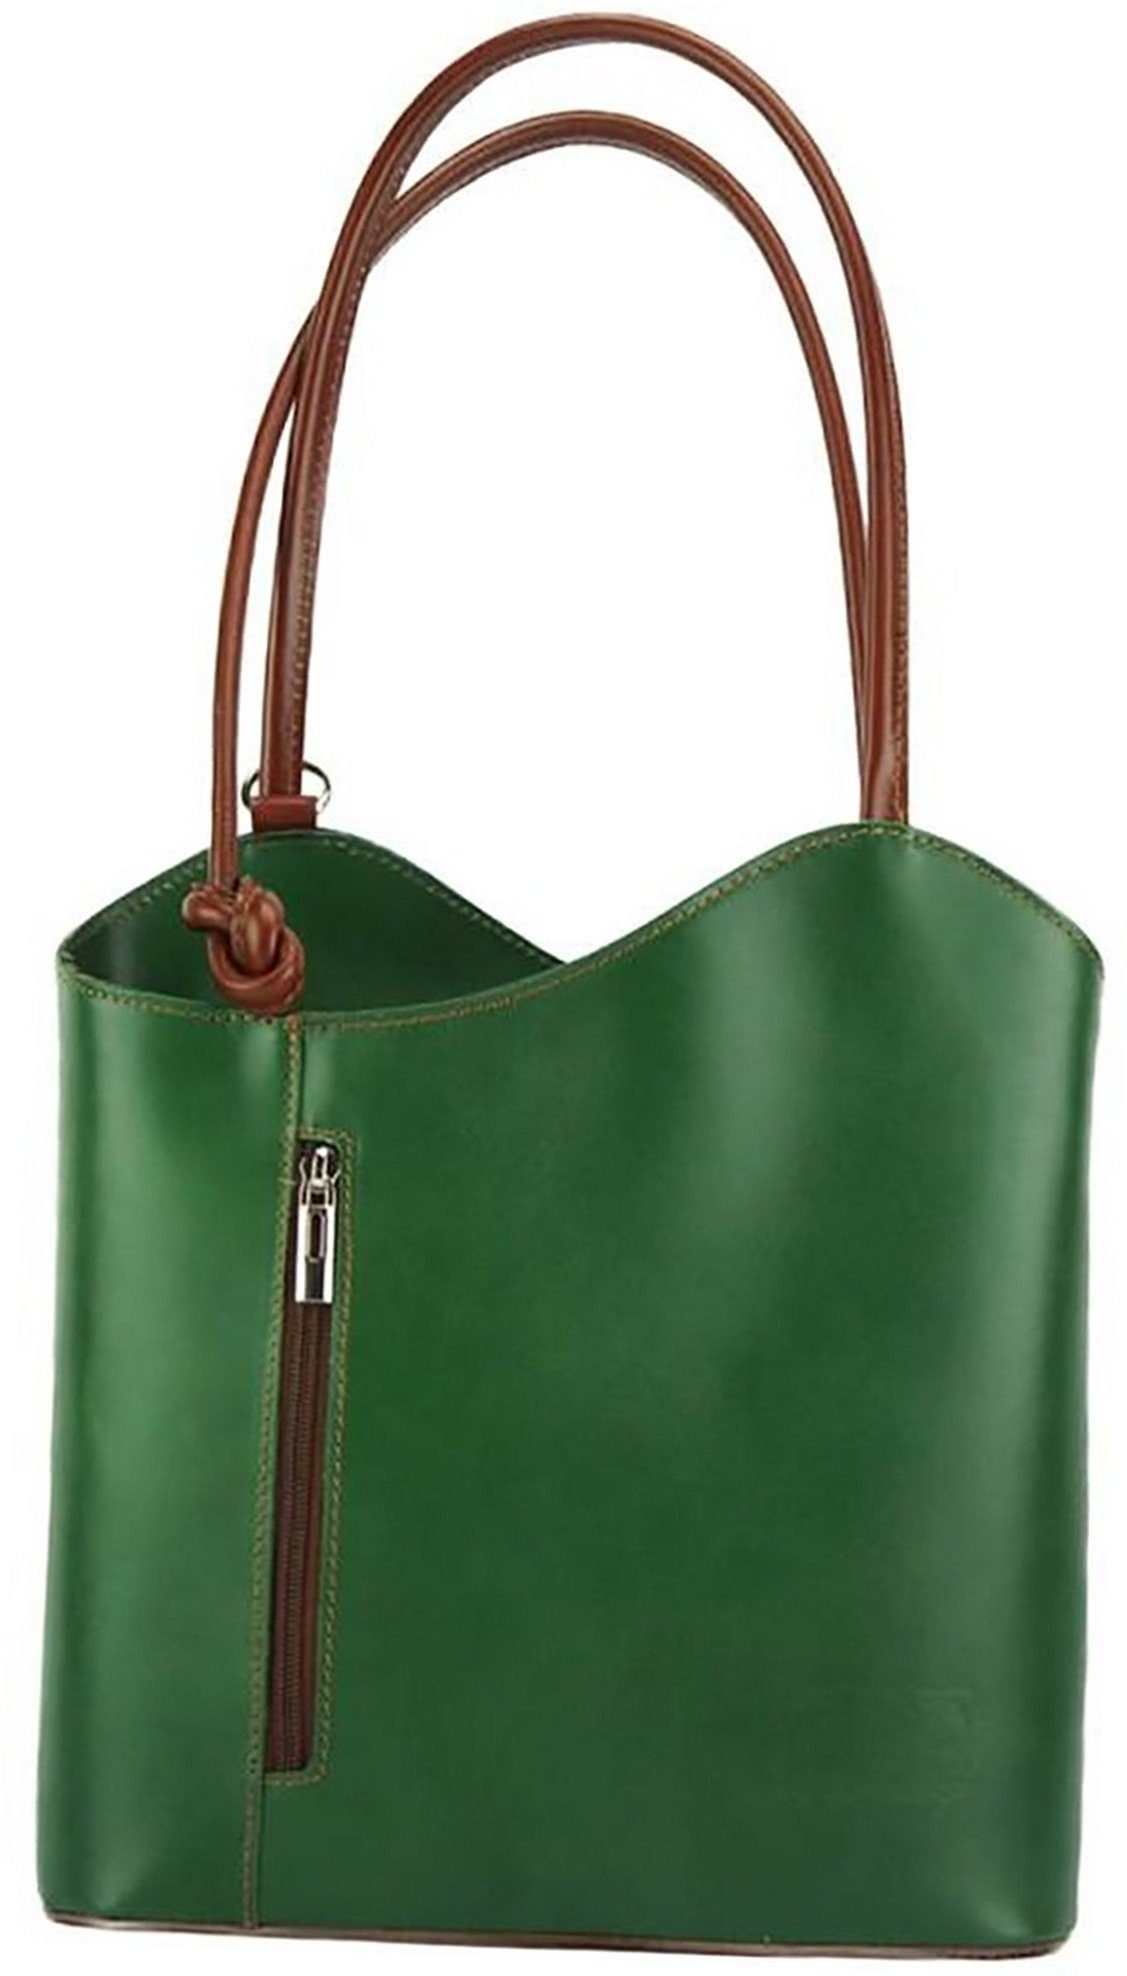 FLORENCE Schultertasche Florence 2in1 Echtleder Damen Handtasche, Damen  Tasche aus Echtleder in grün, braun, ca. 28cm Breite, Made-In Italy